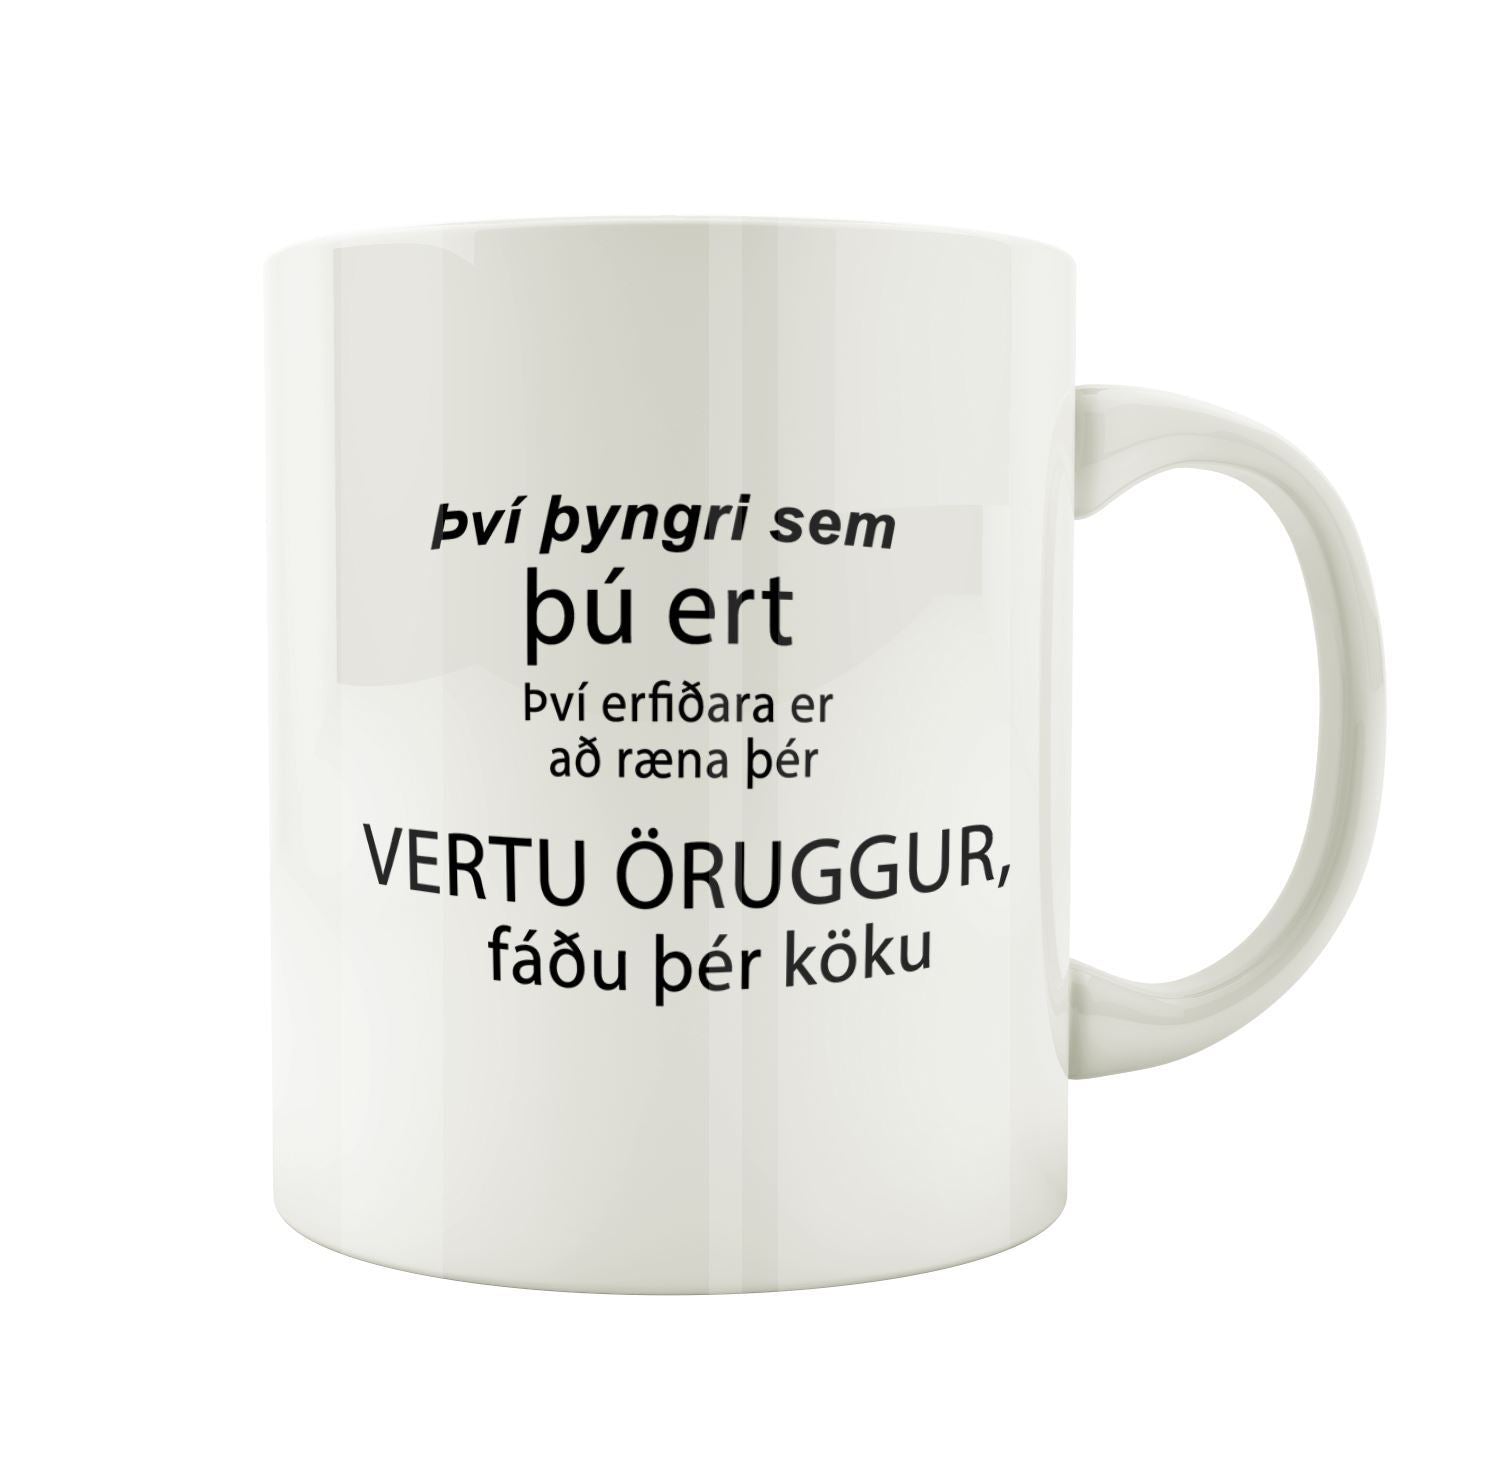 Því þyngri sem þú ert, því erfiðara er að ræna þér.. Vertu öruggur... BORÐAÐU KÖKU!